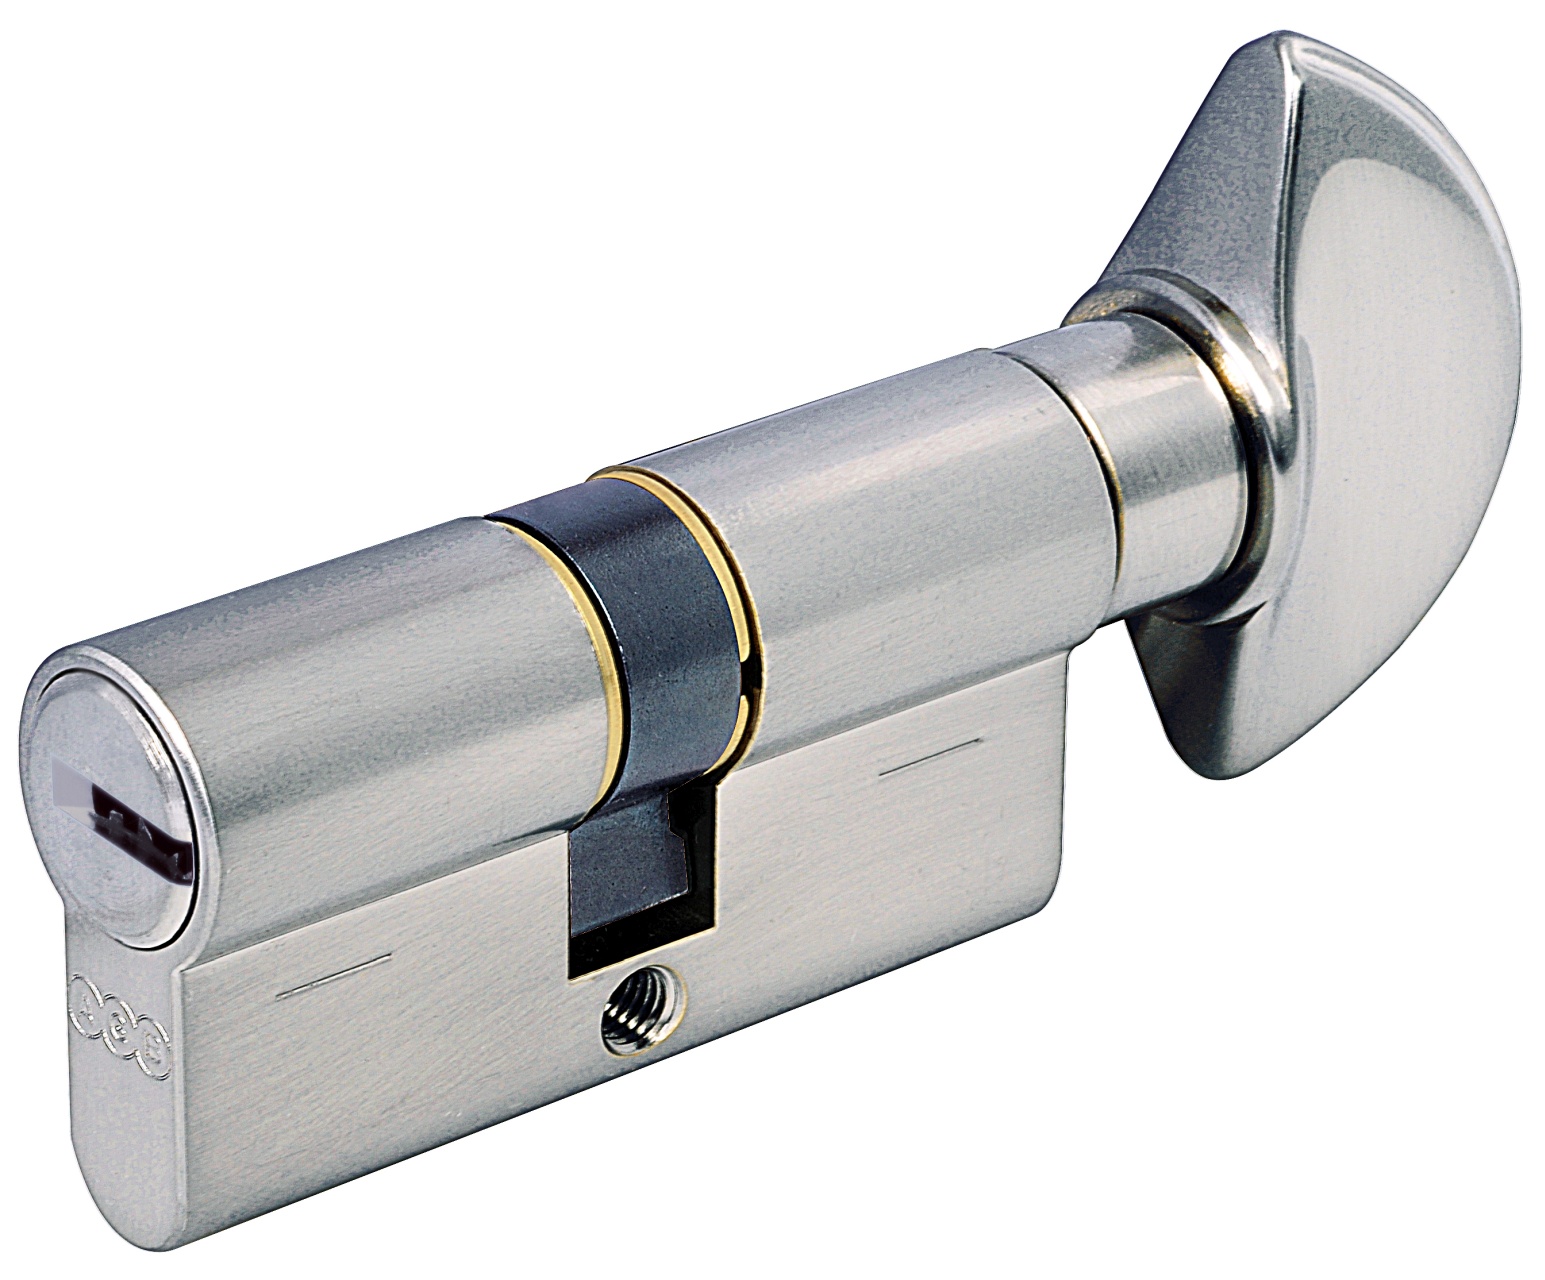 AGB -  Cilindro SCUDO 5000 PS frizionato anti bamping con chiave e pomolo - col. LUCIDO VERNICIATO - lunghezza 95 - misura P-35-10-50